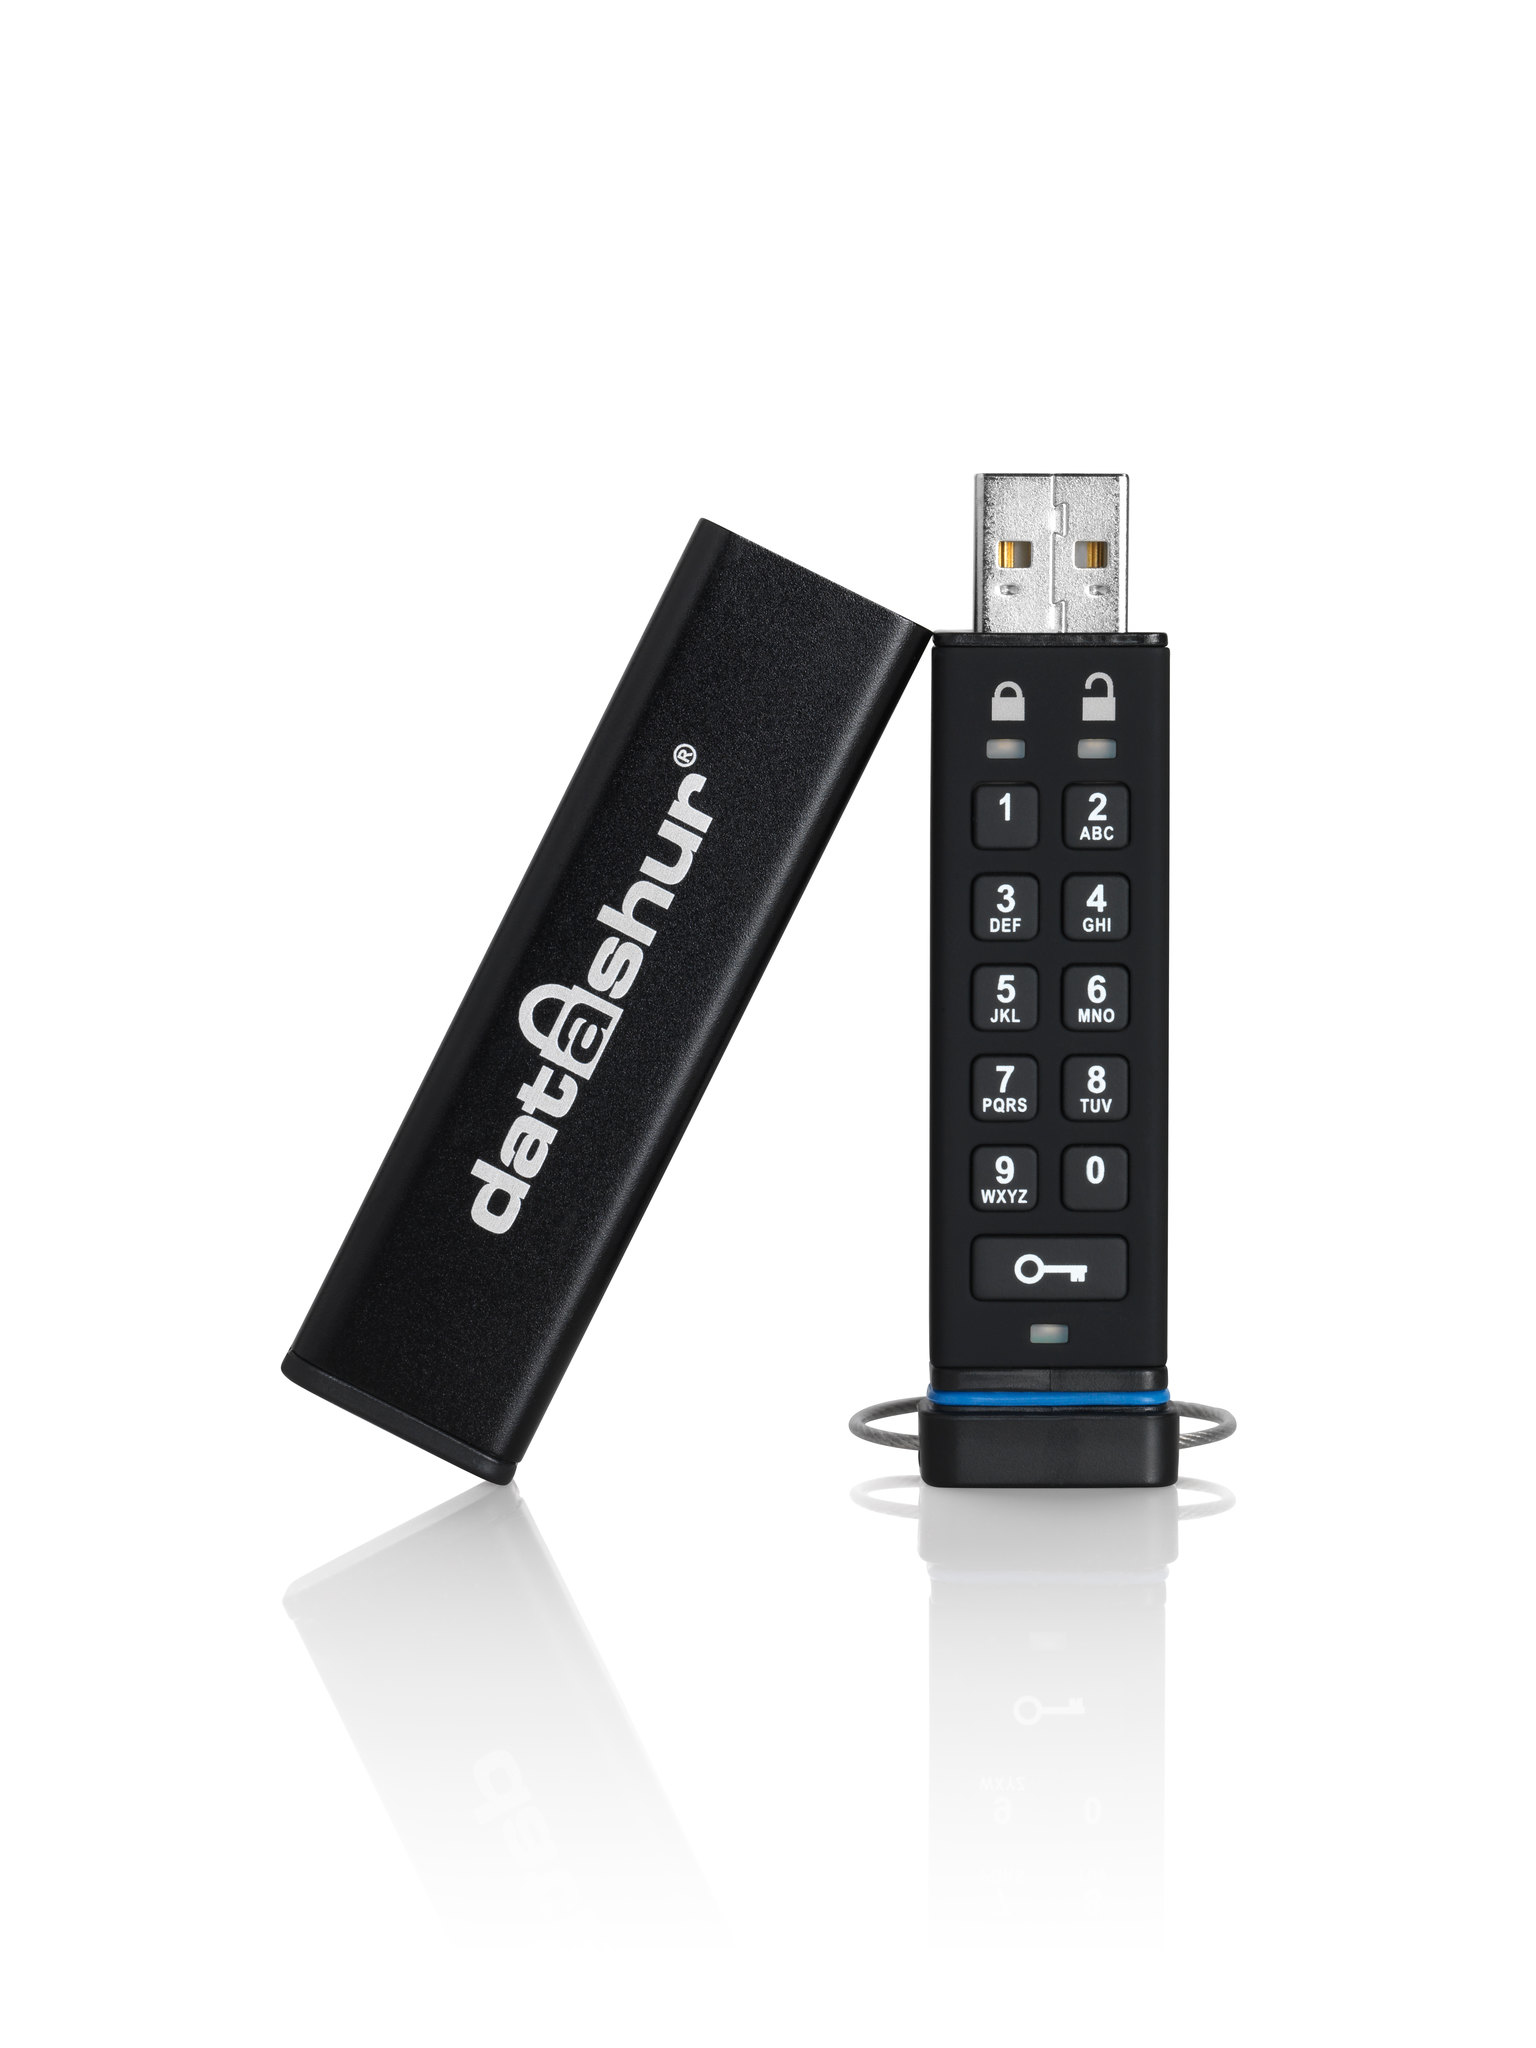 iStorage datAshur - USB-Flash-Laufwerk - verschlüsselt